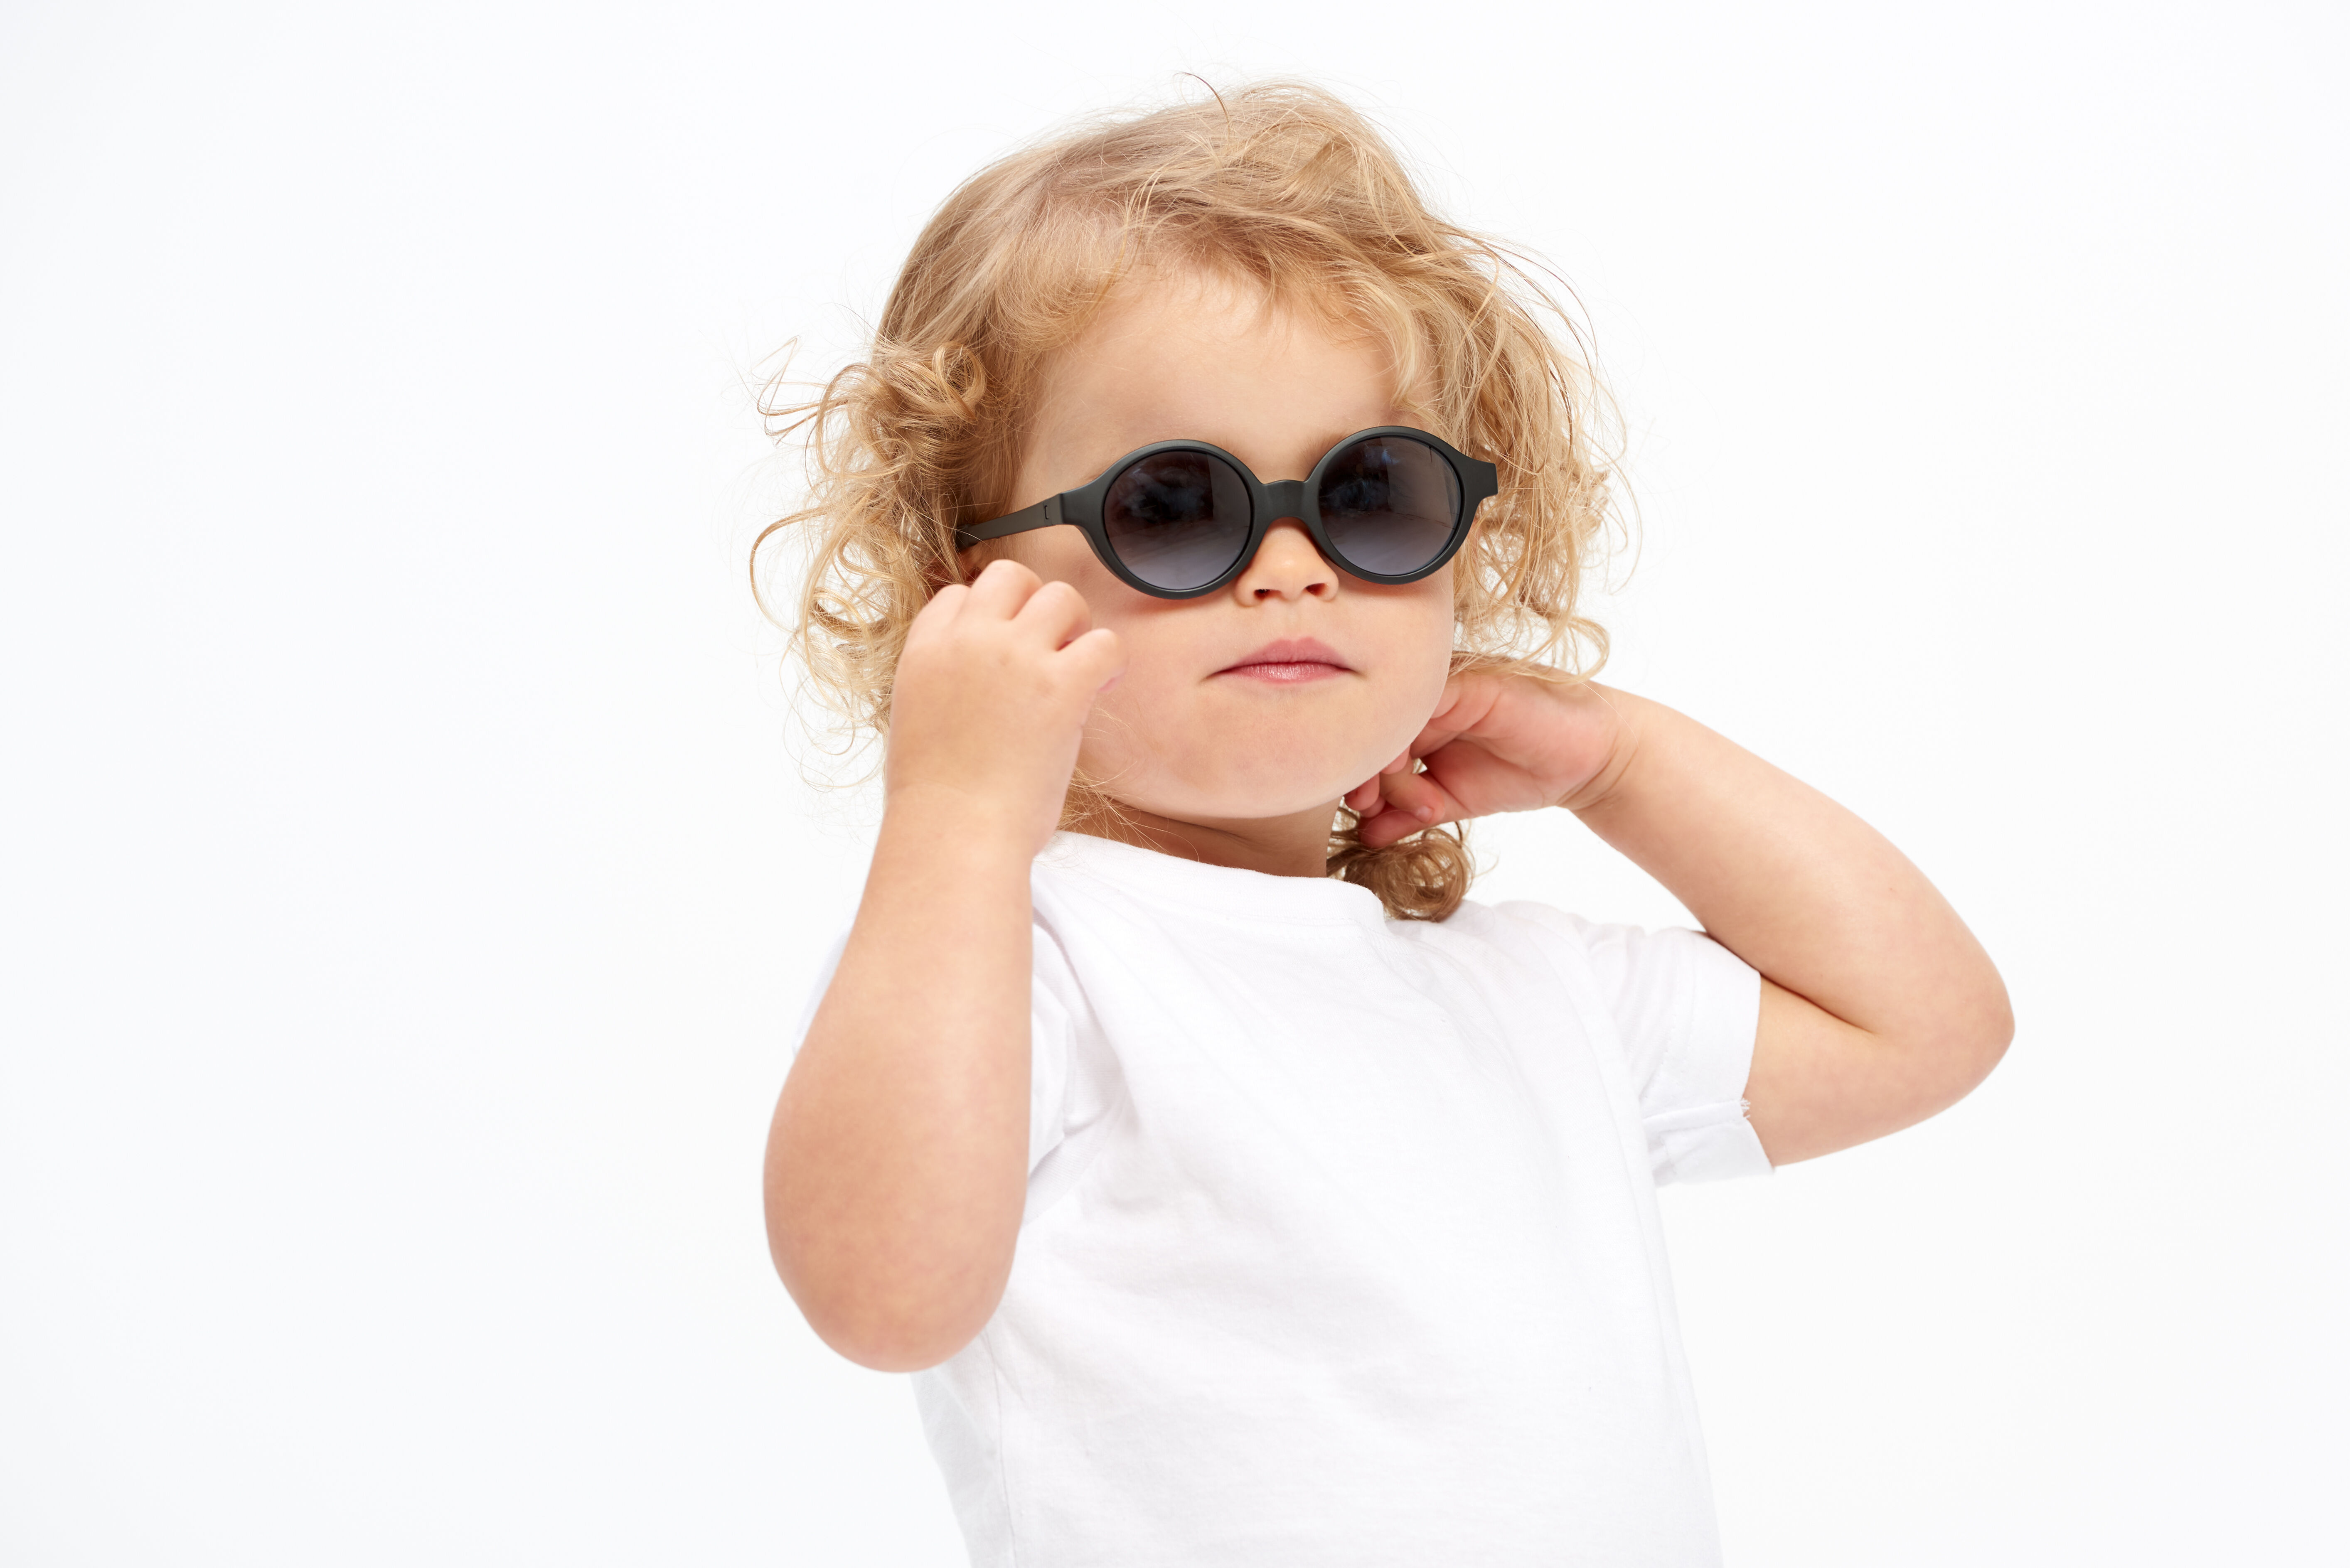 Beaba Baby Sunglasses 2019 Range S Black 